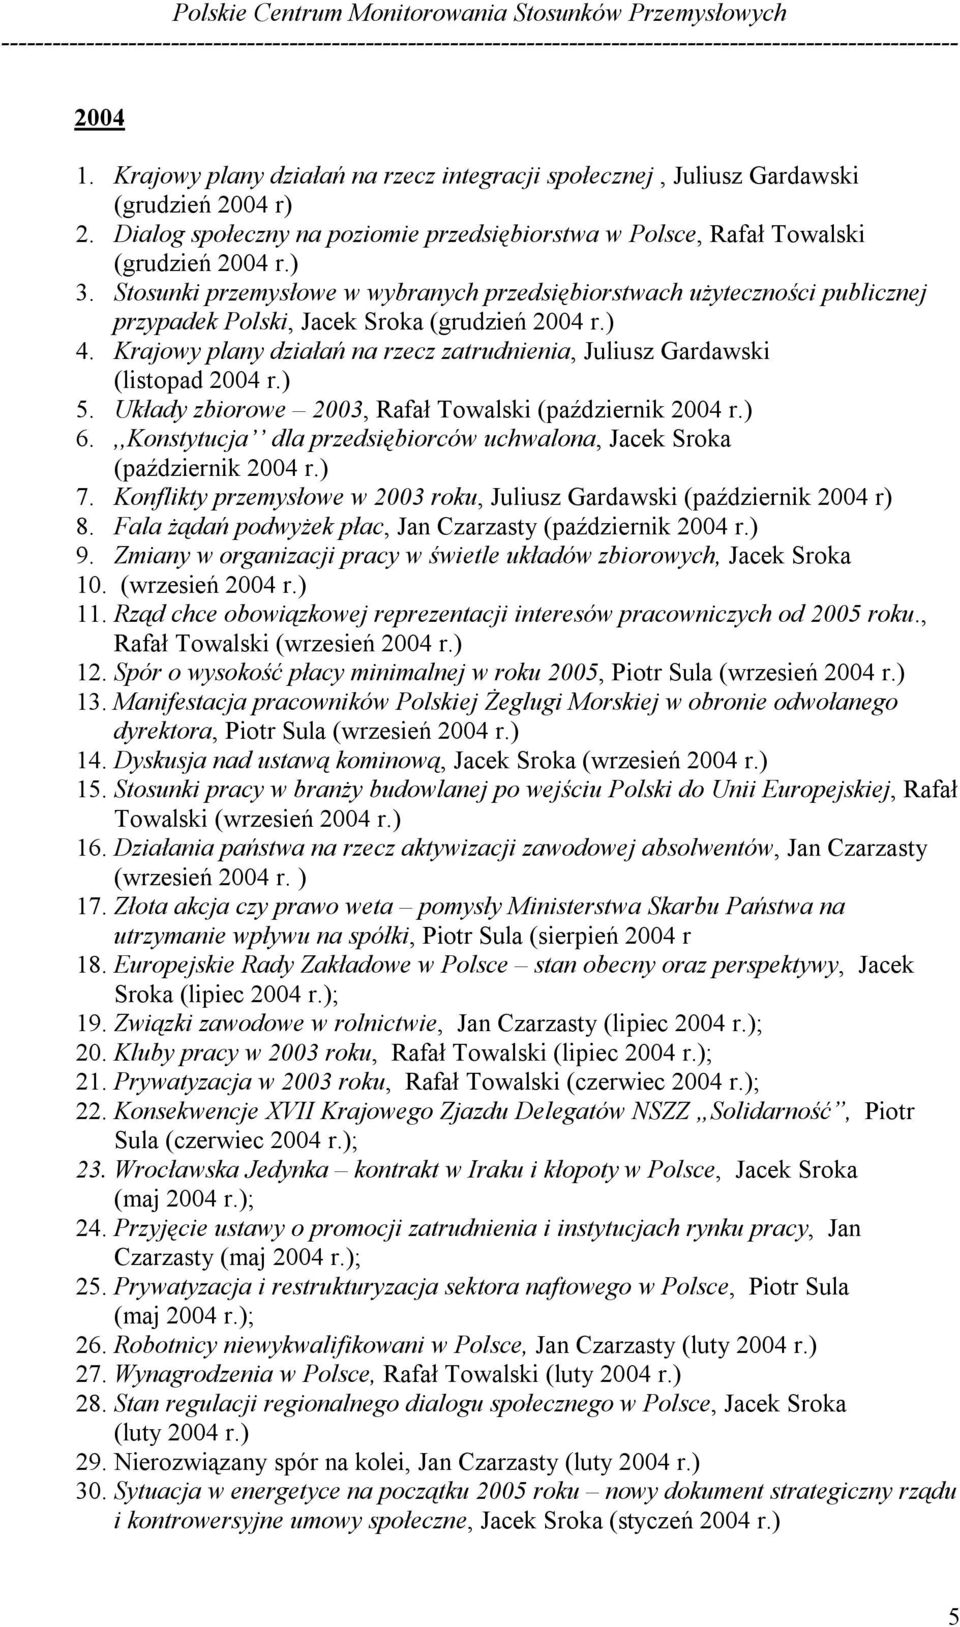 Krajowy plany działań na rzecz zatrudnienia, Juliusz Gardawski (listopad 2004 r.) 5. Układy zbiorowe 2003, Rafał Towalski (październik 2004 r.) 6.